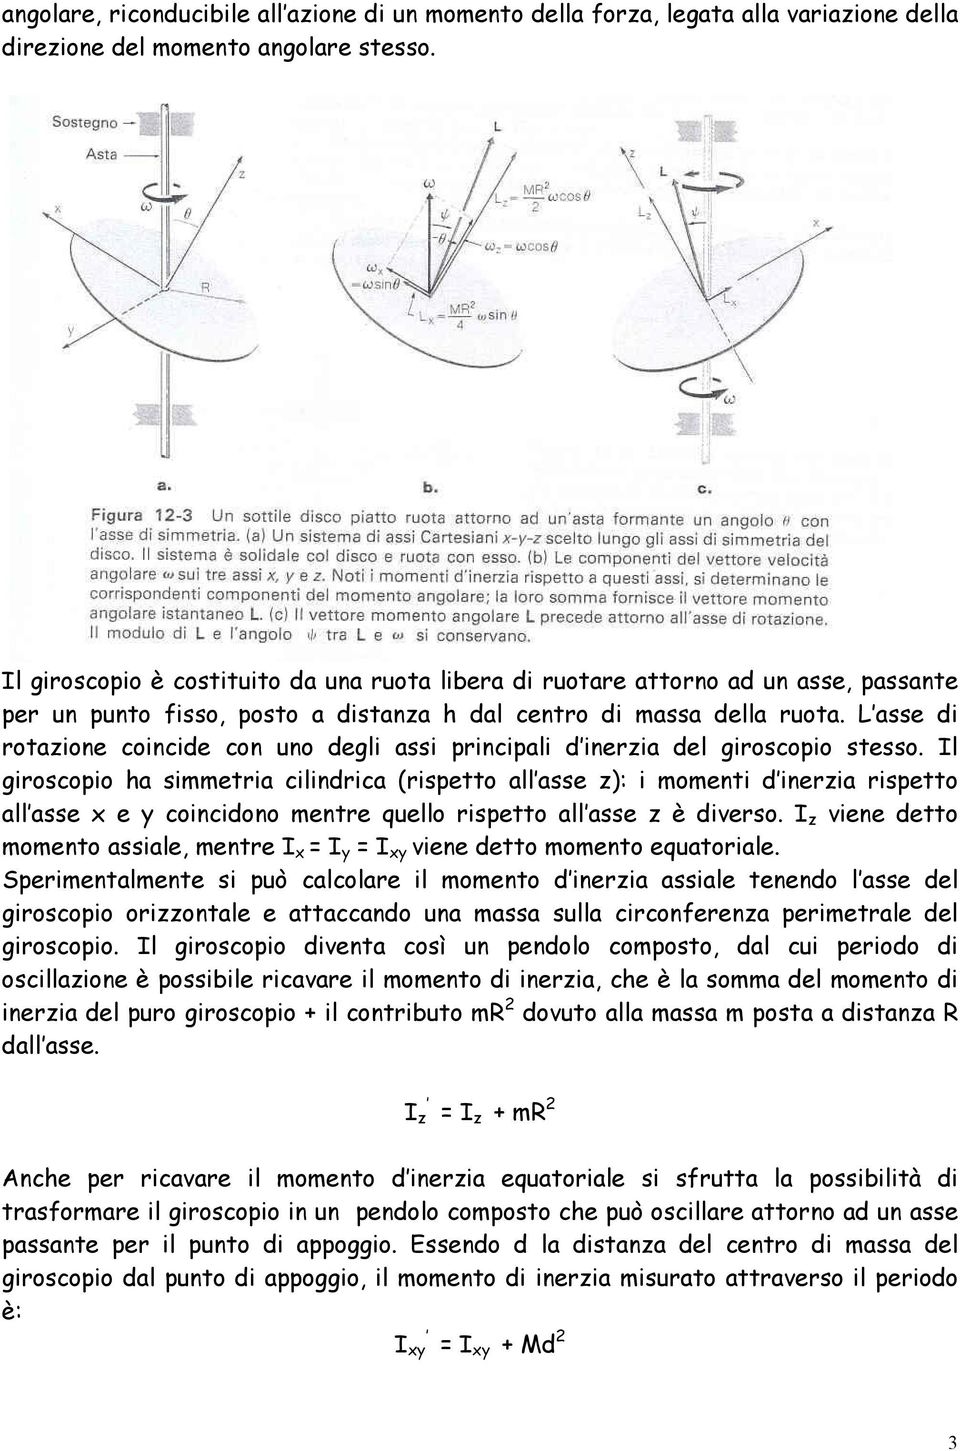 L asse di rotazione coincide con uno degli assi principali d inerzia del giroscopio stesso.